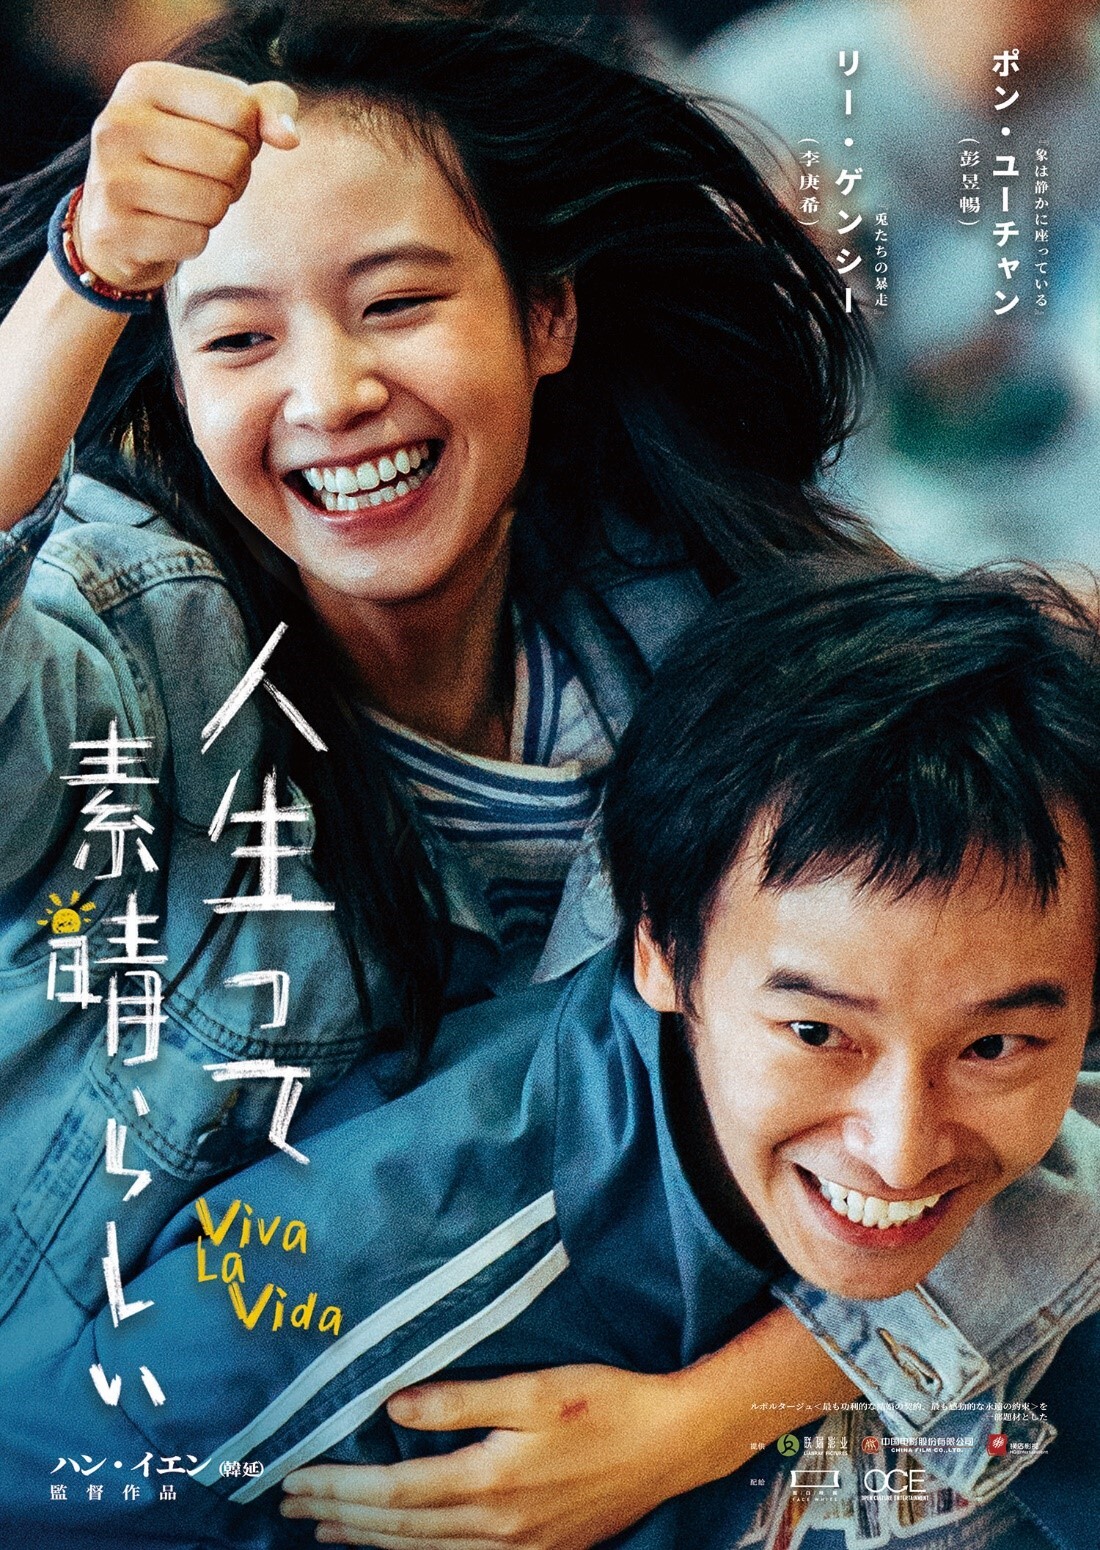 面白映画株式会社、日中での同時上映へ挑戦　
中国映画「人生って素晴らしい～Vila La Vida」
(原題：我們一起揺太陽)を4月5日、日本市場で上映予定 – Net24